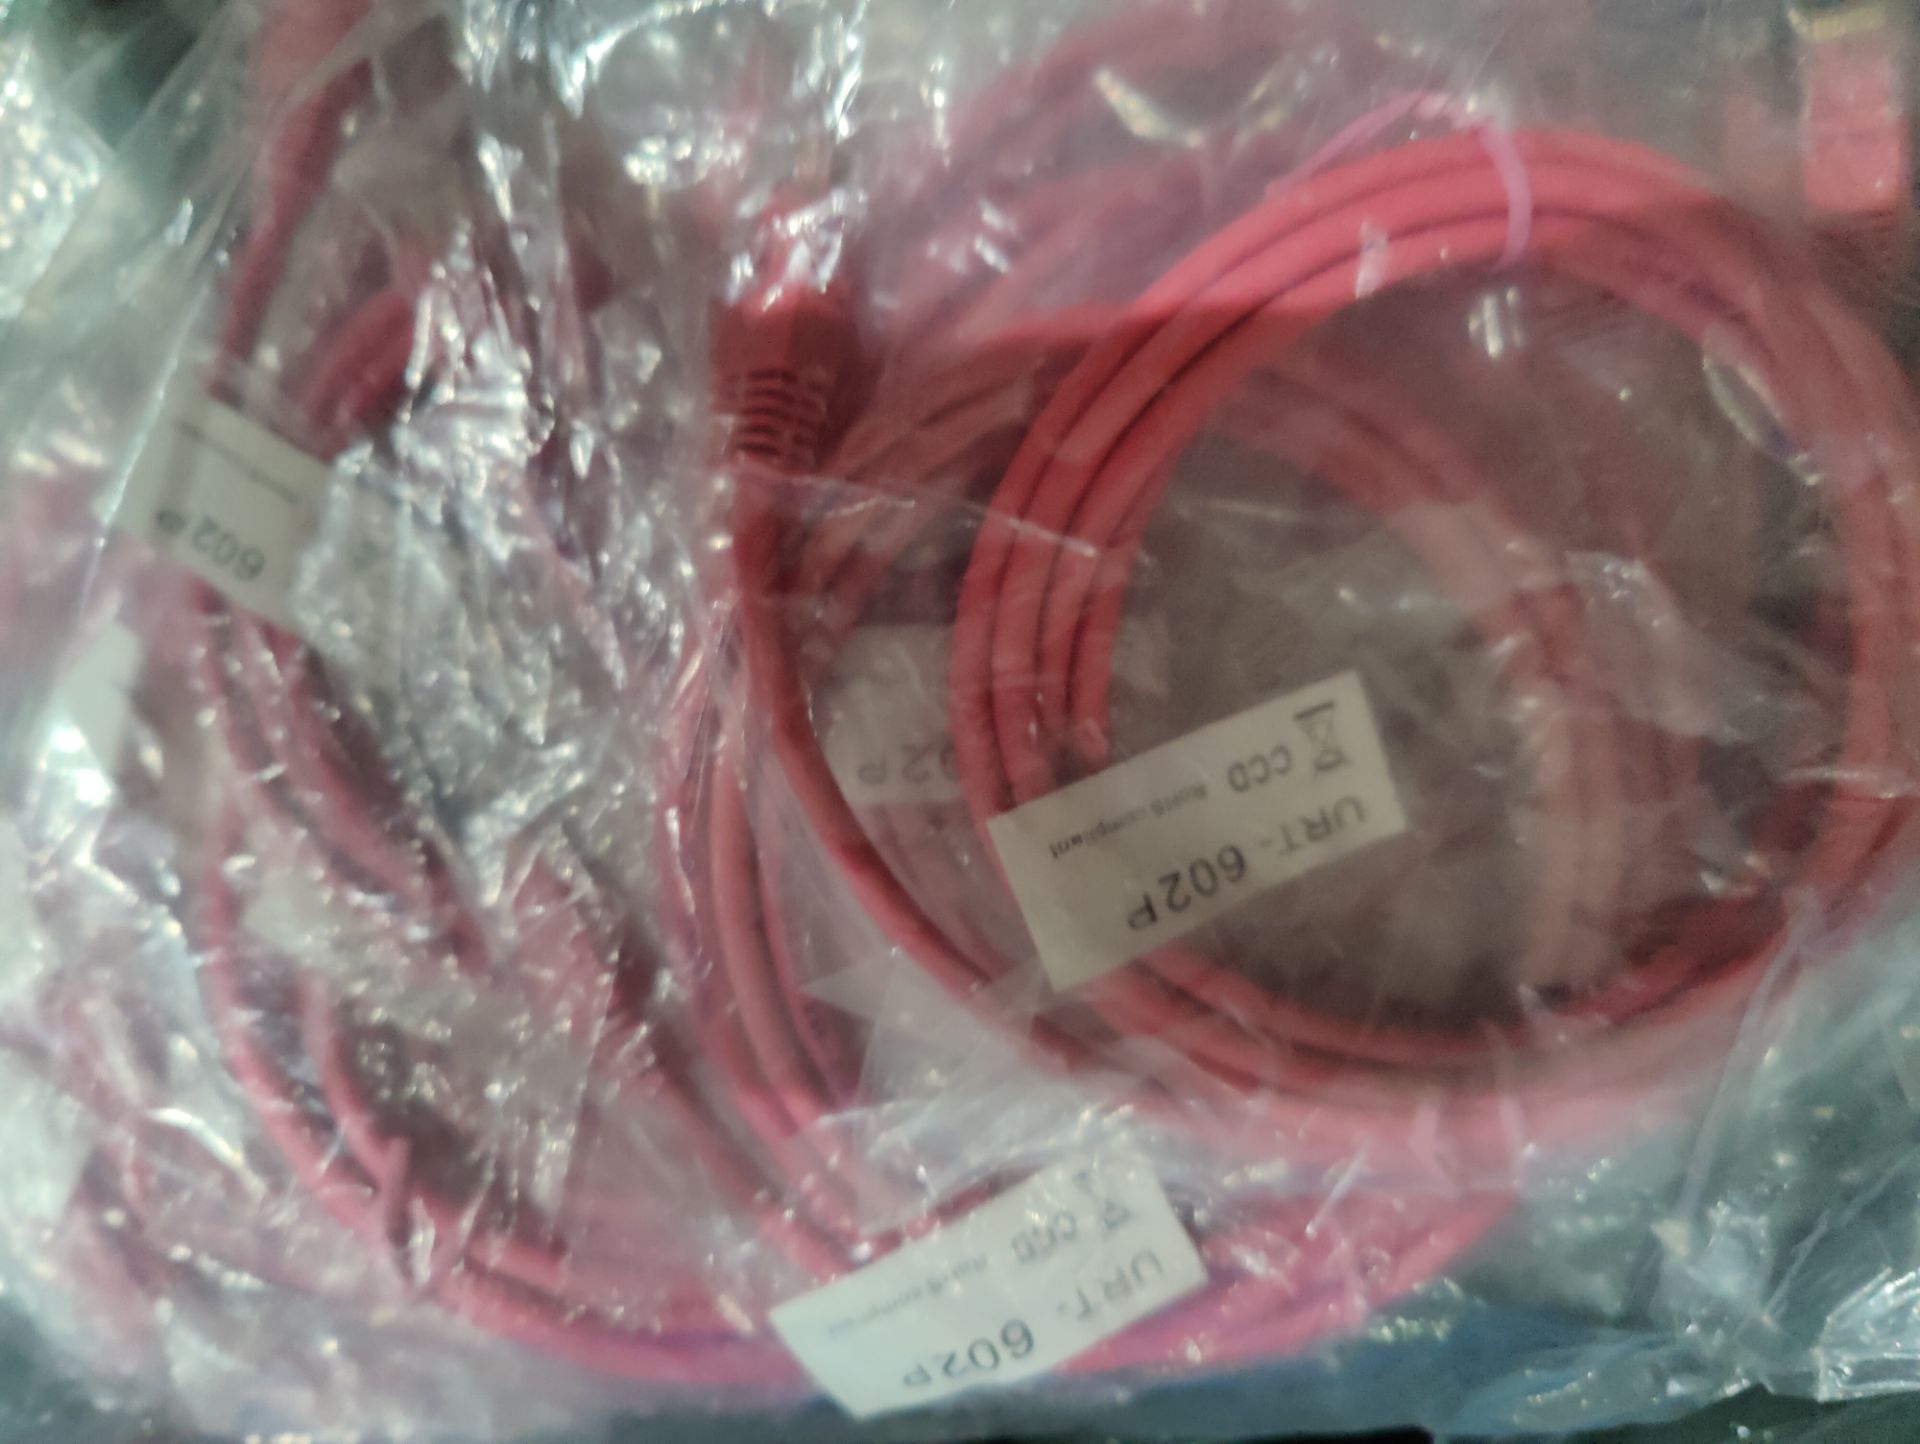 10 x Connekt Gear 3M RJ45 Netork Cable (Pink) - Image 2 of 2